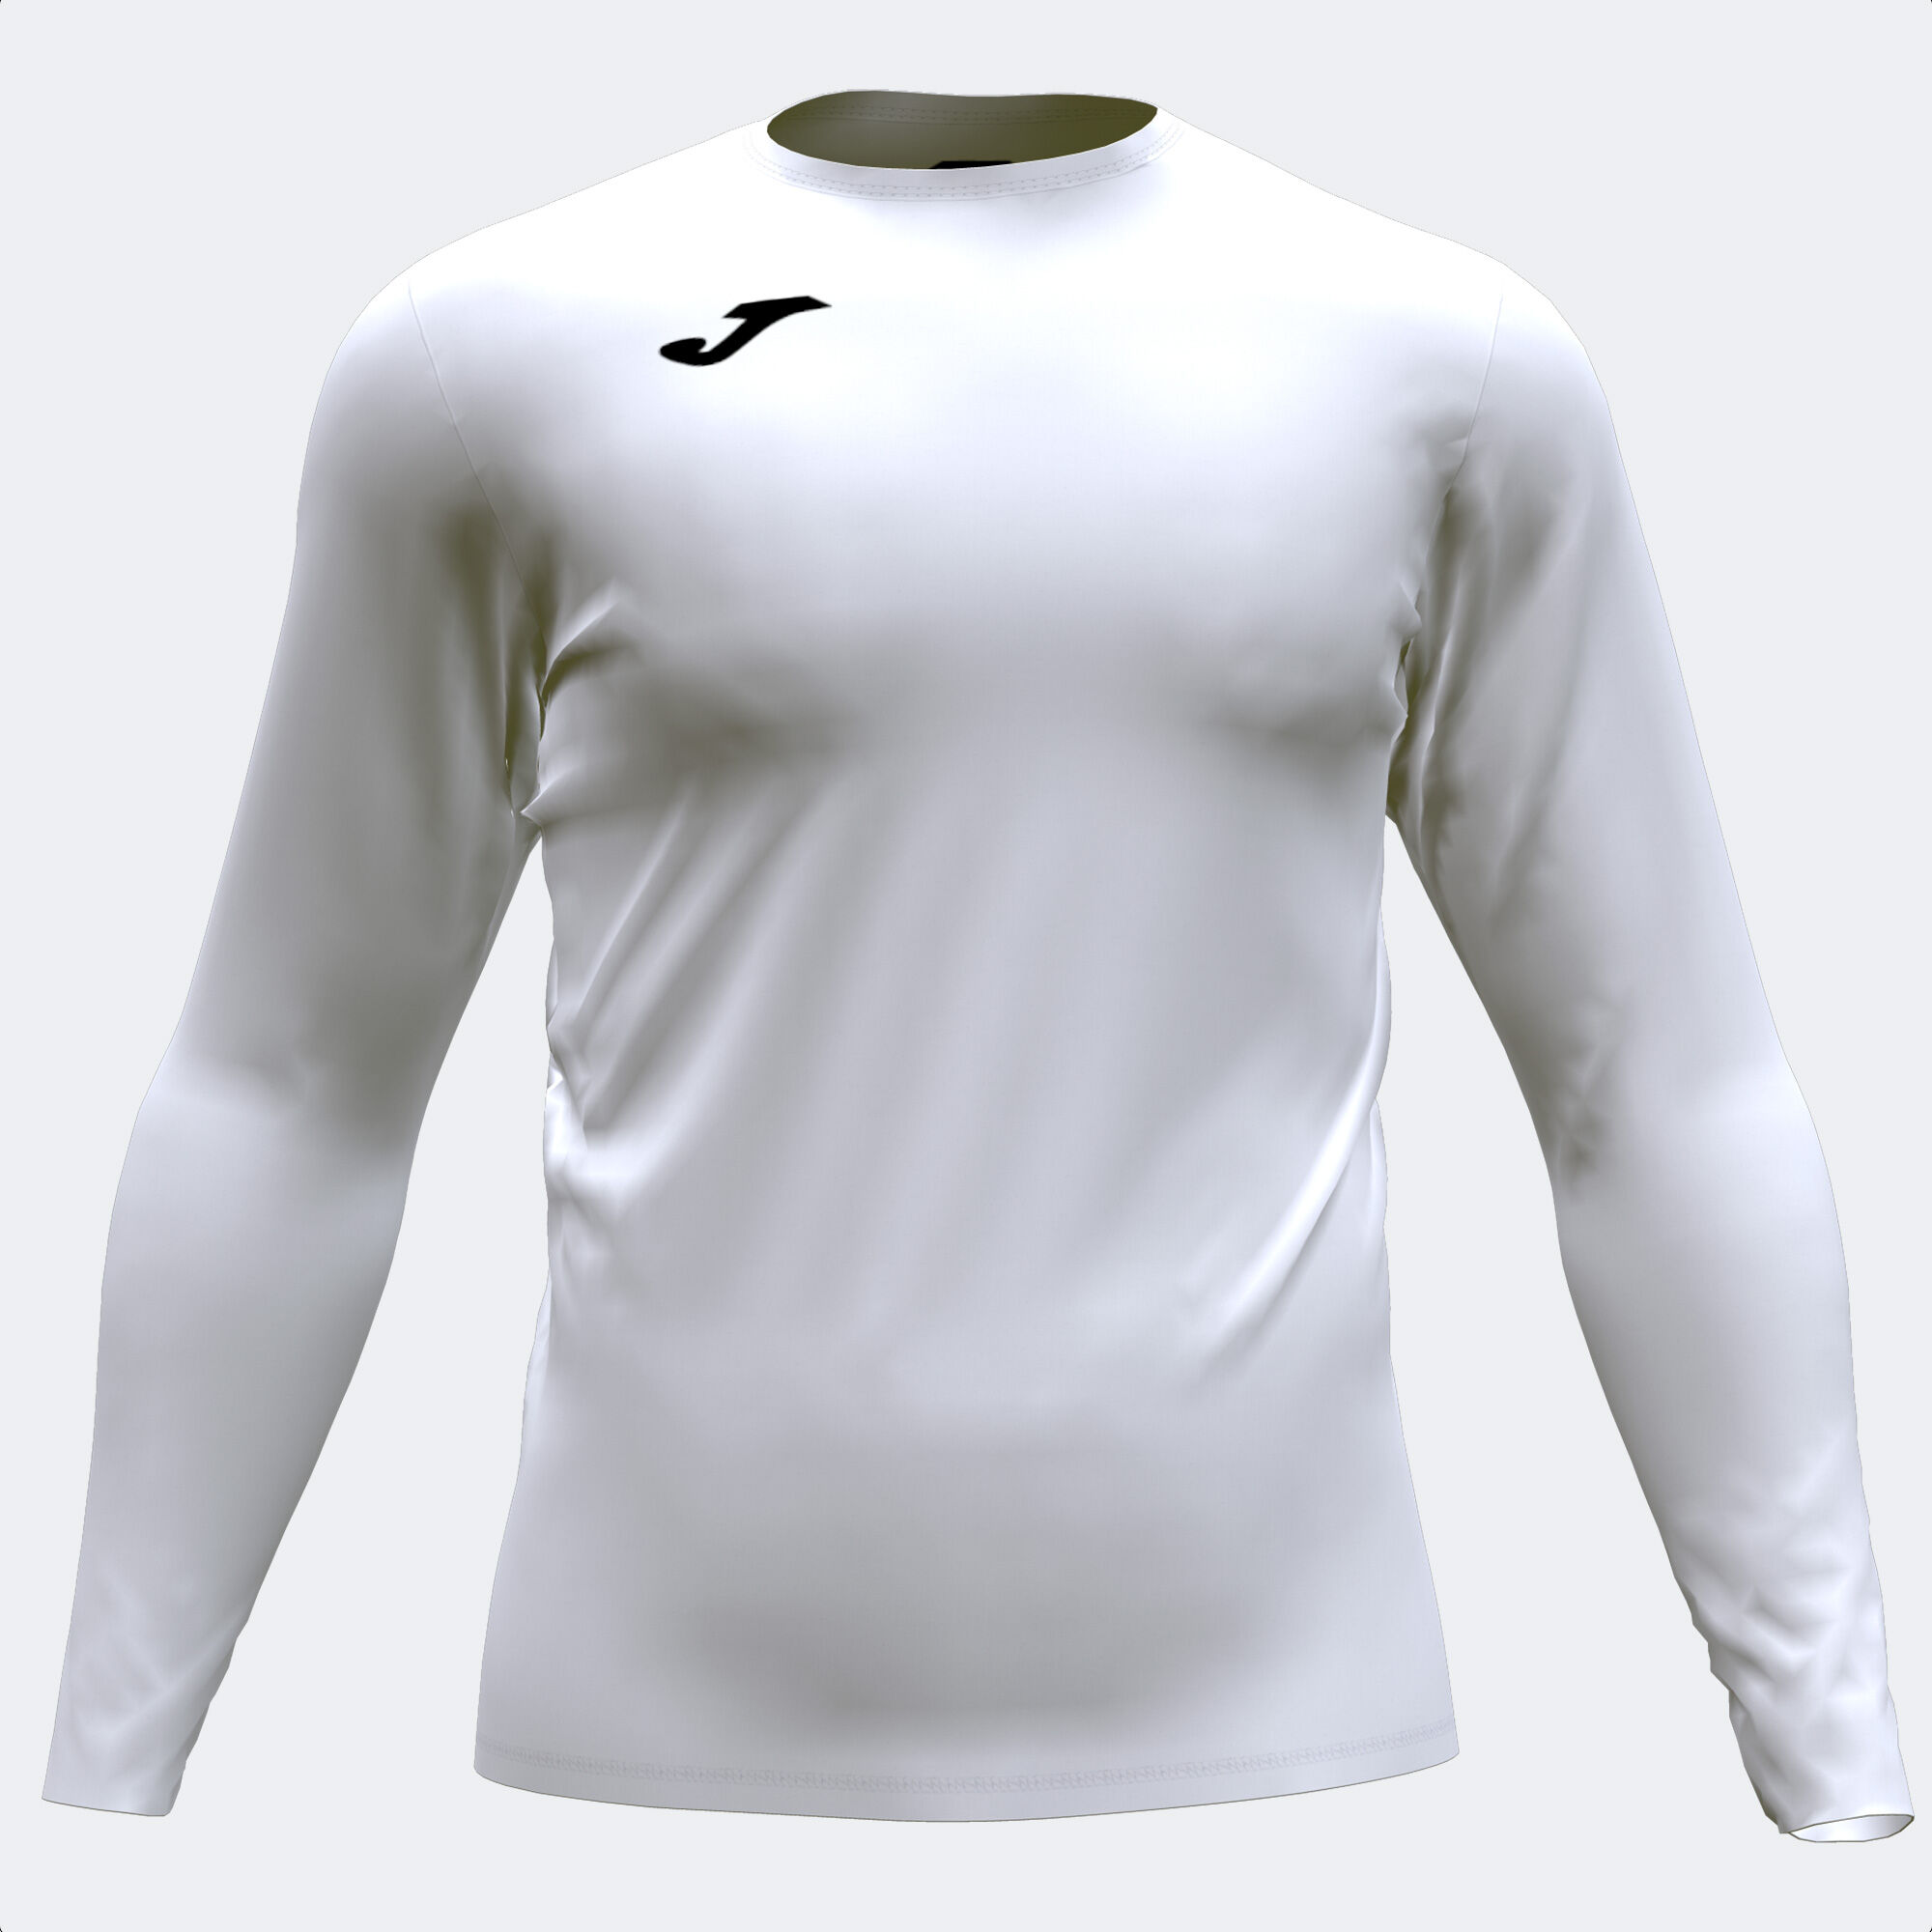 Camiseta manga larga unisex Brama Academy blanco